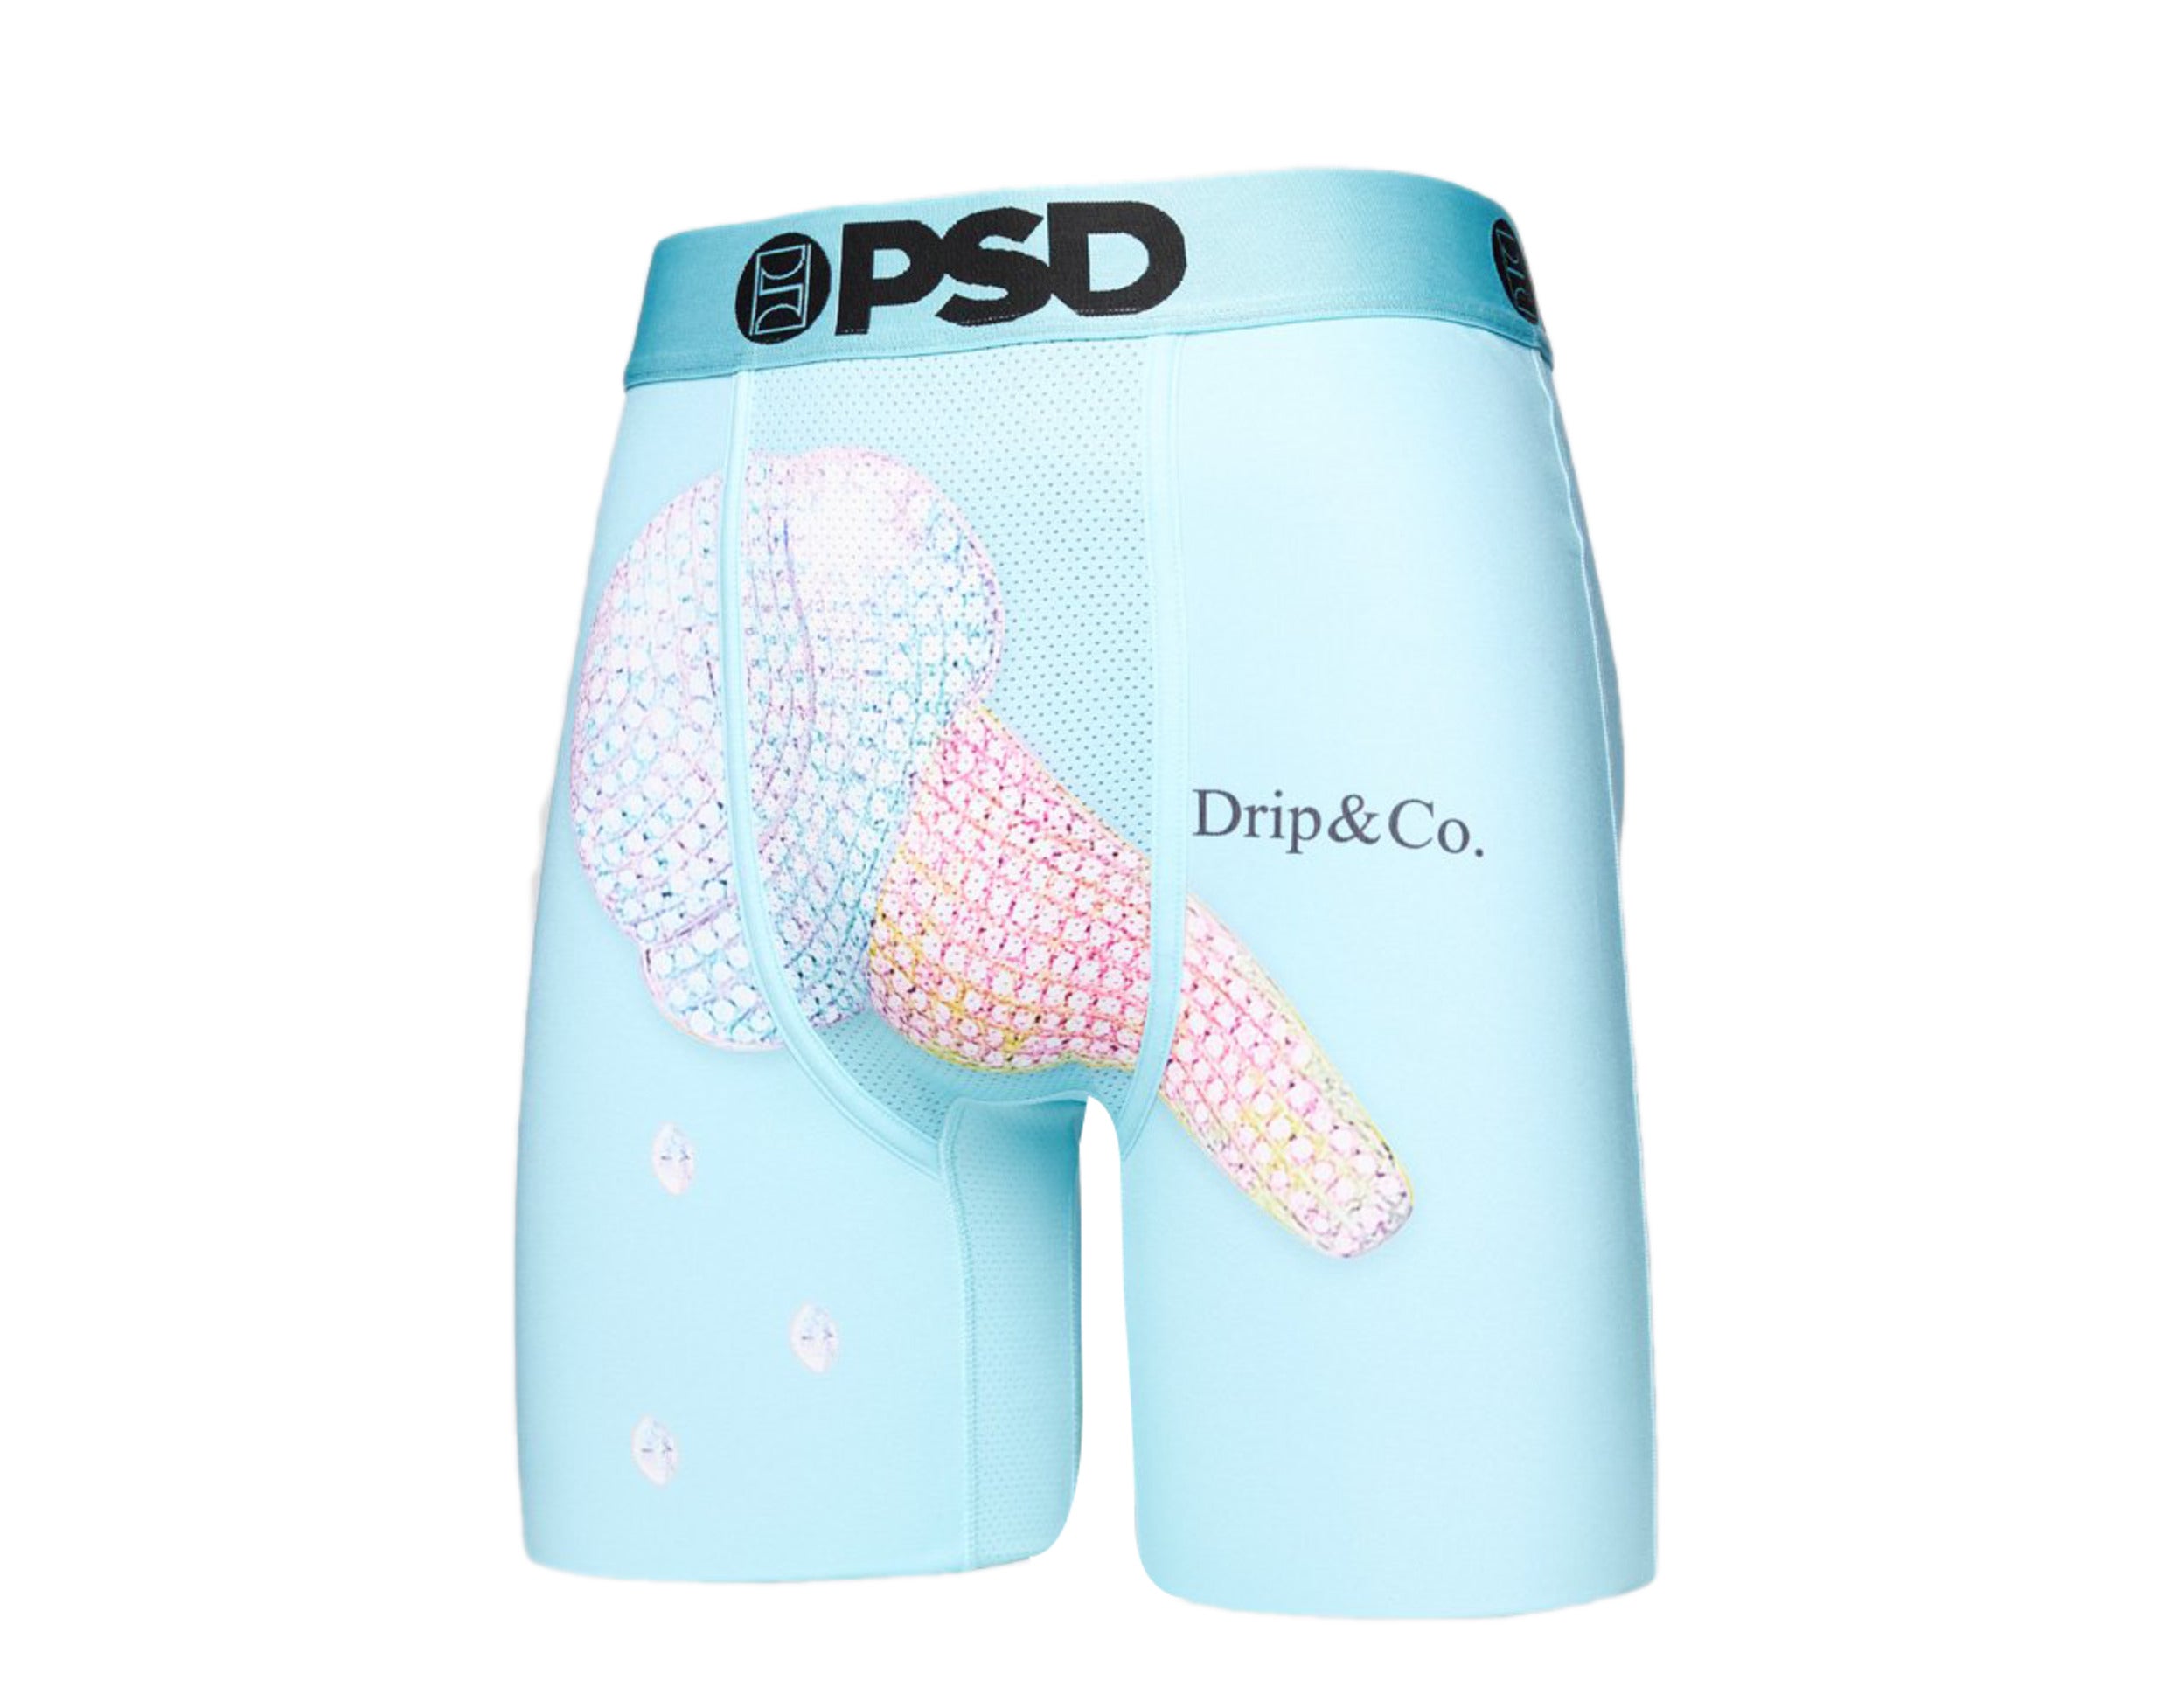 PSD Drip & Co Boxer Briefs Men's Underwear